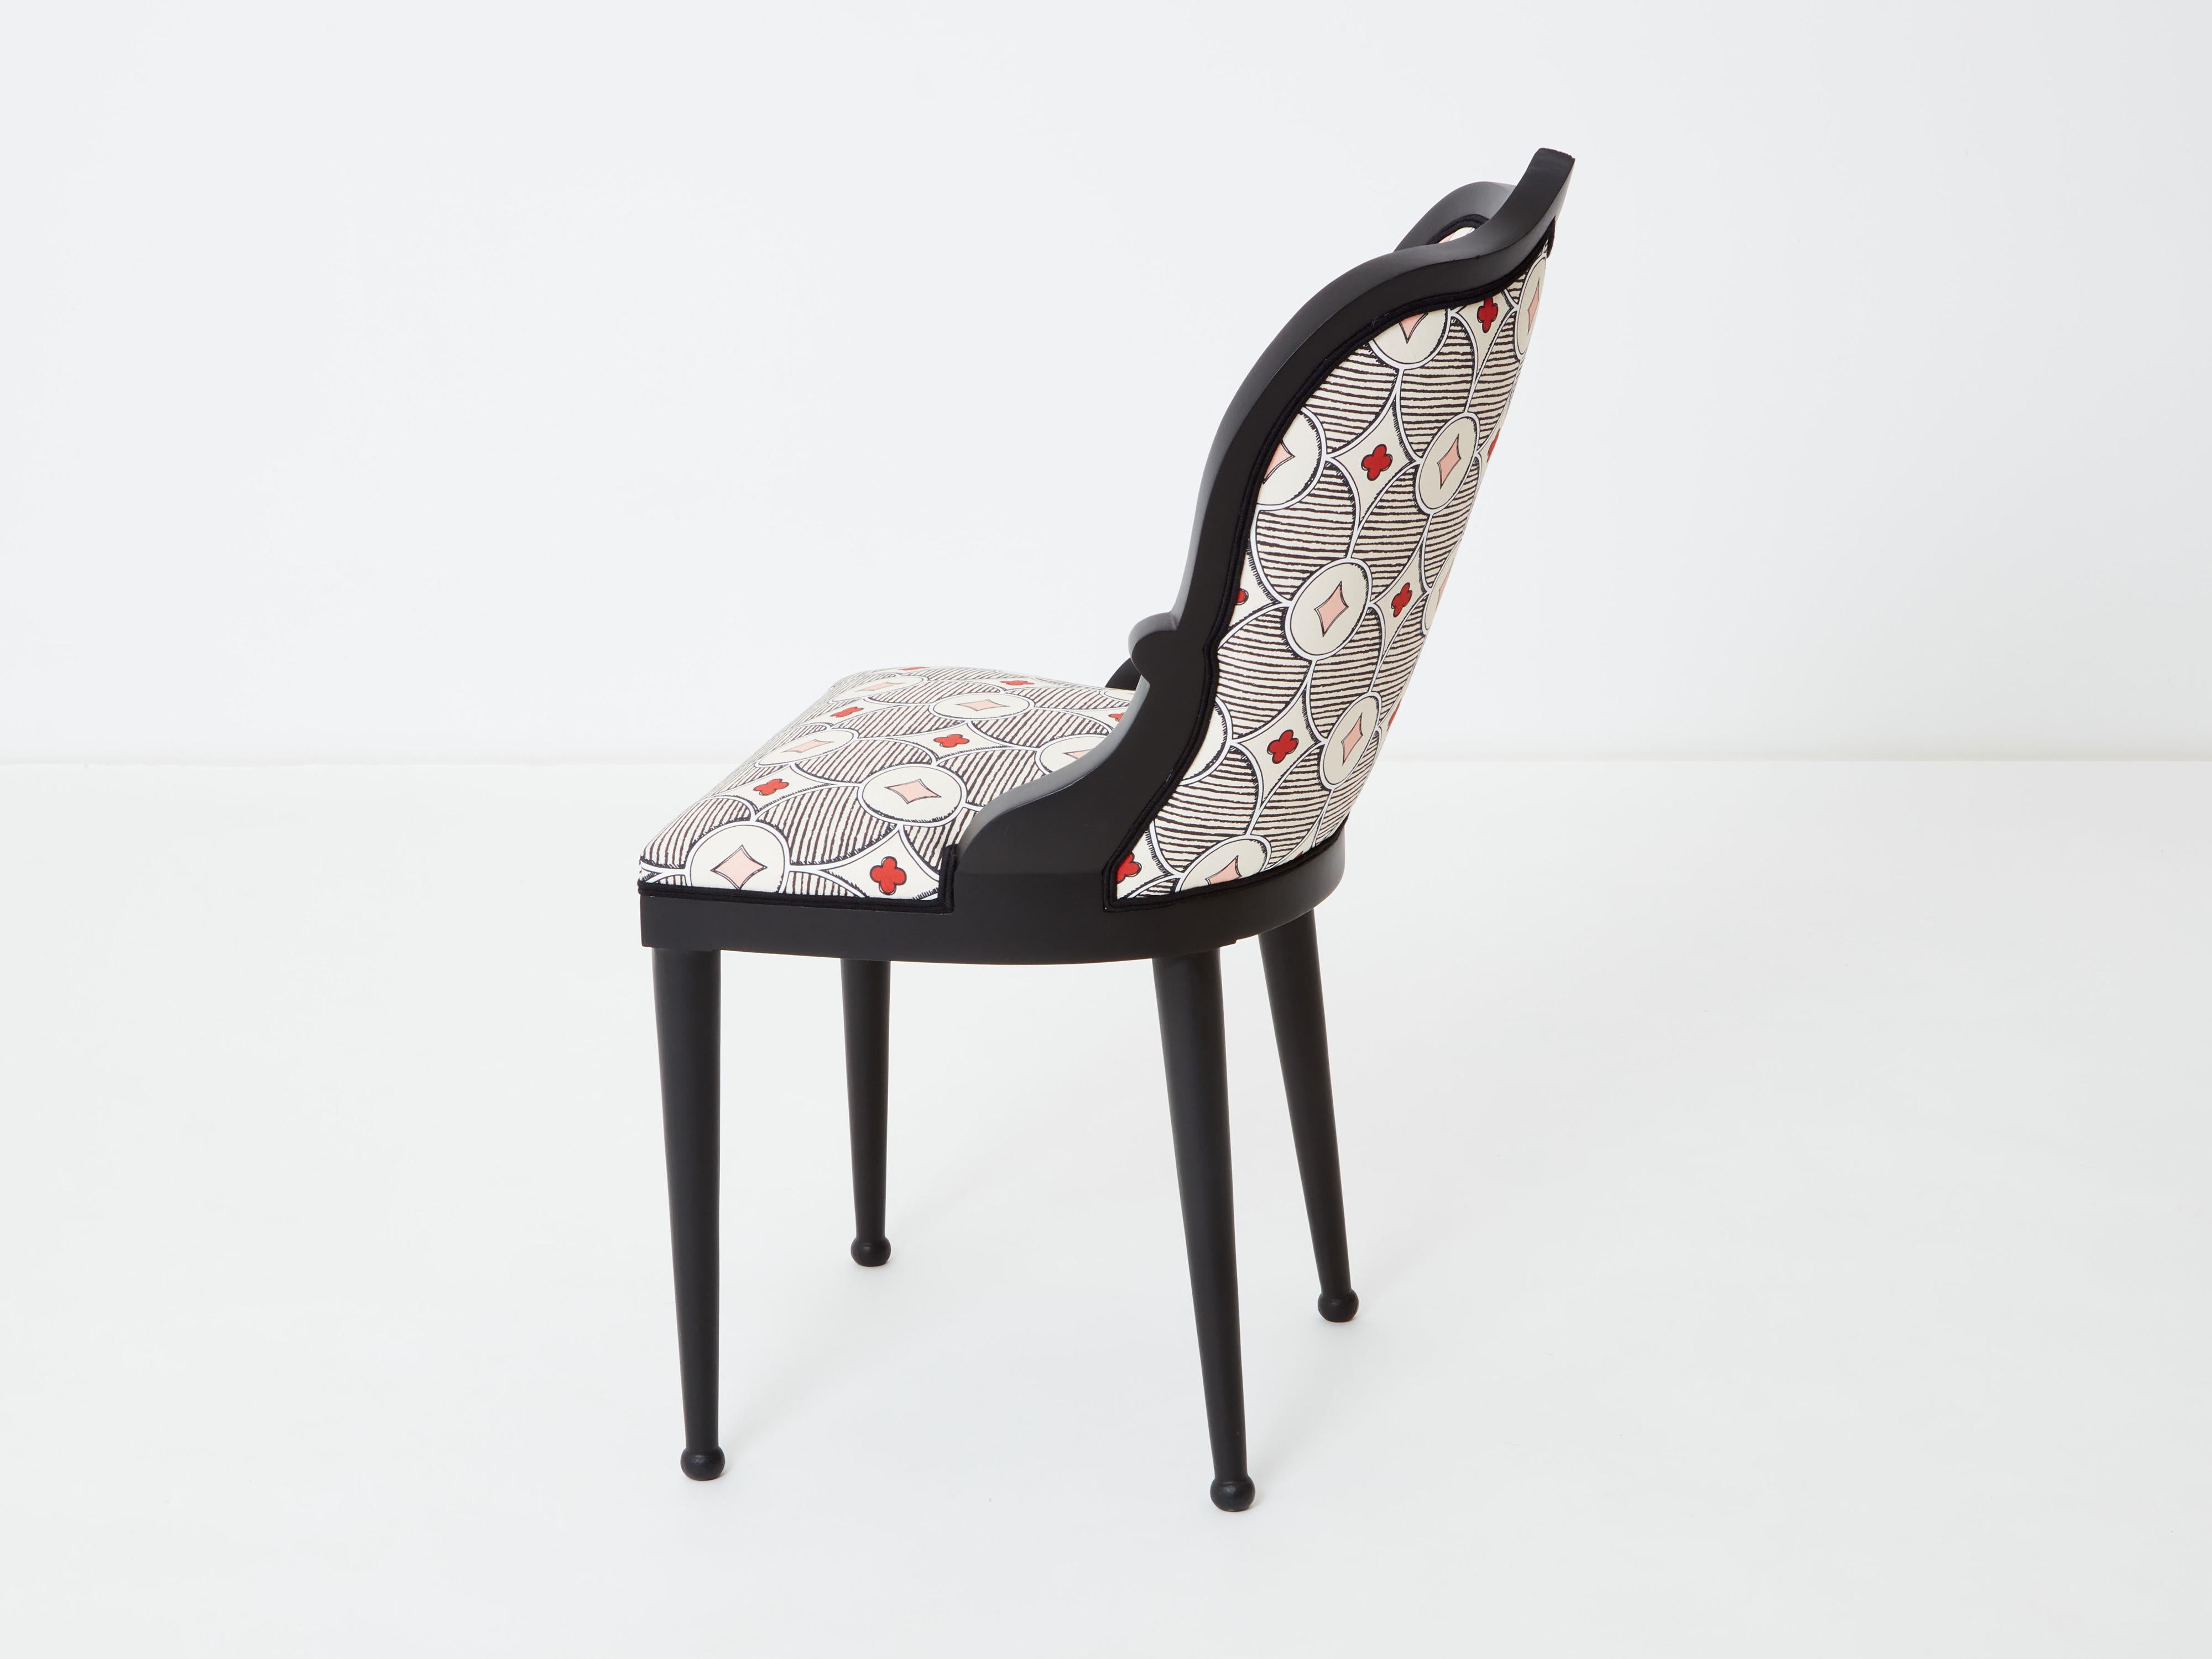 Garouste & Bonetti desk chair Palace Privilege Rubelli fabric 1980 For Sale 6